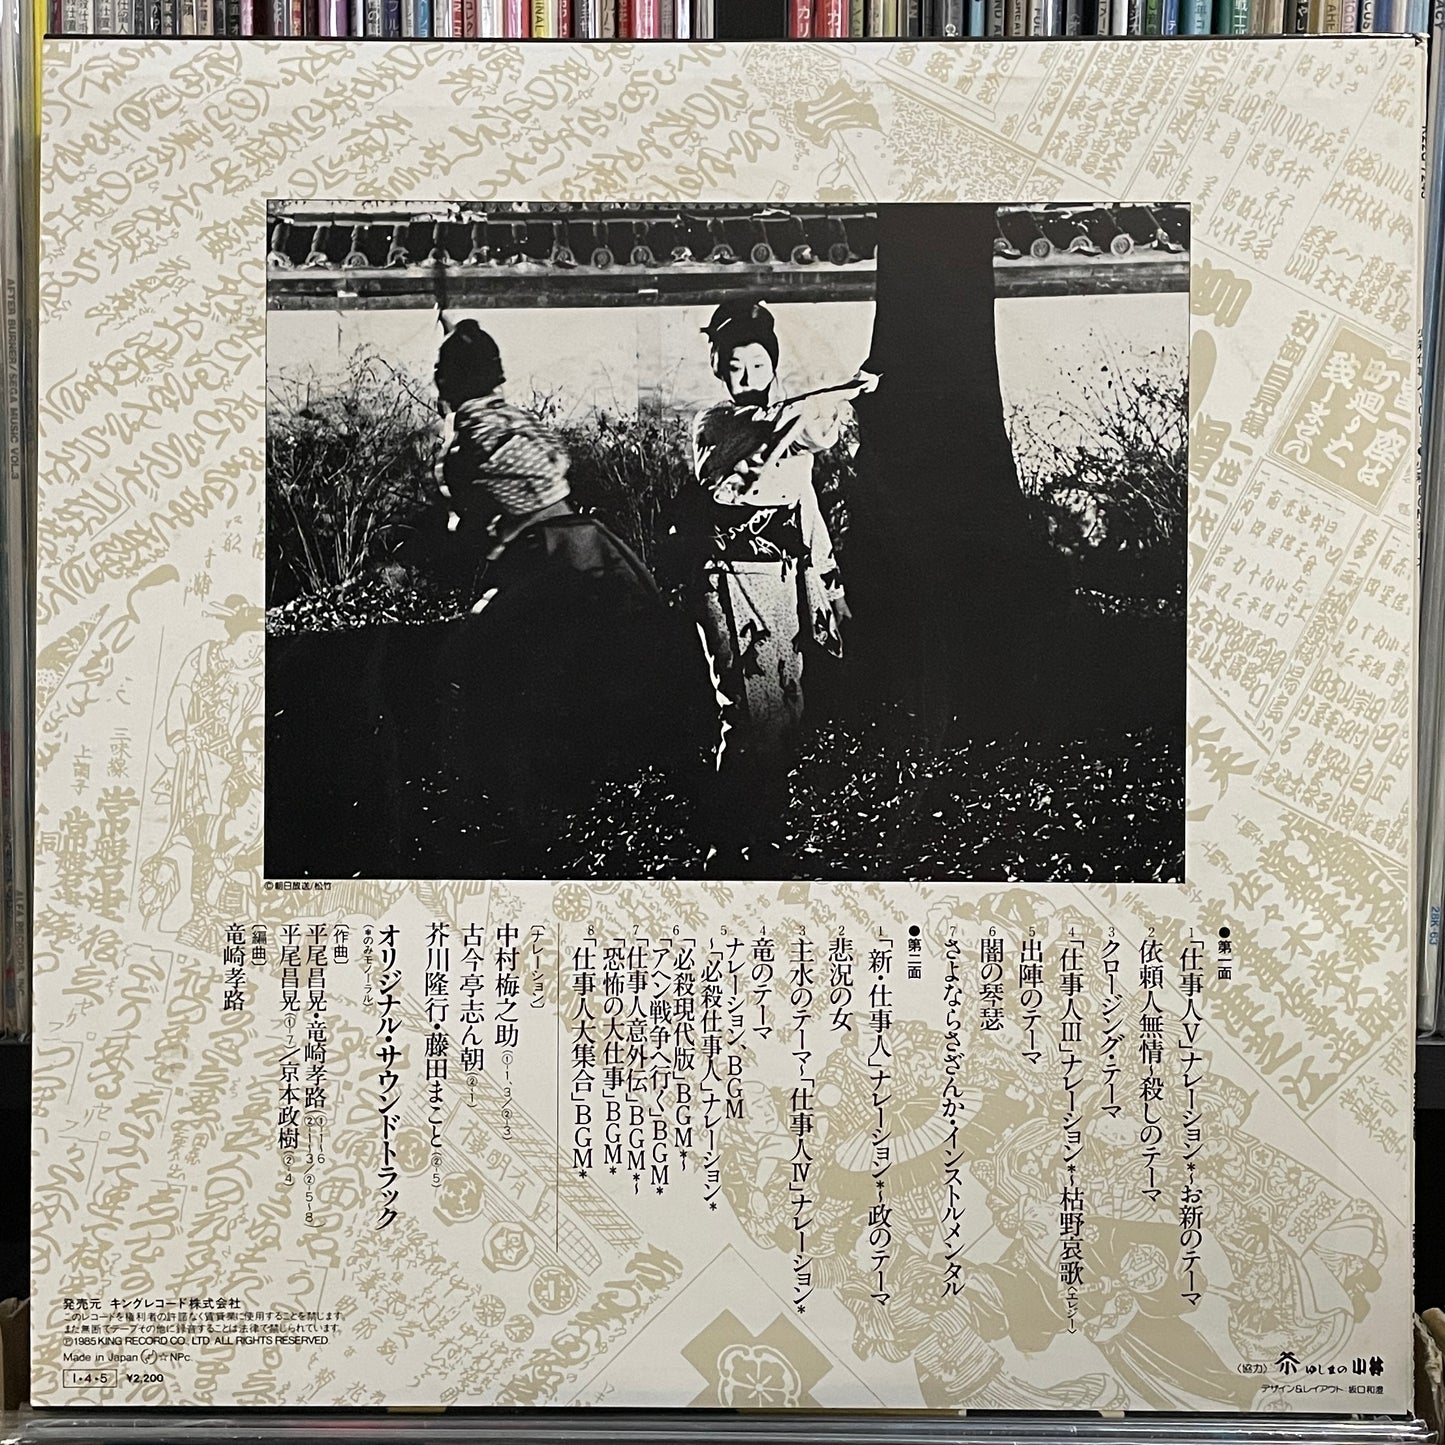 必殺仕事人Vol.III (1985)